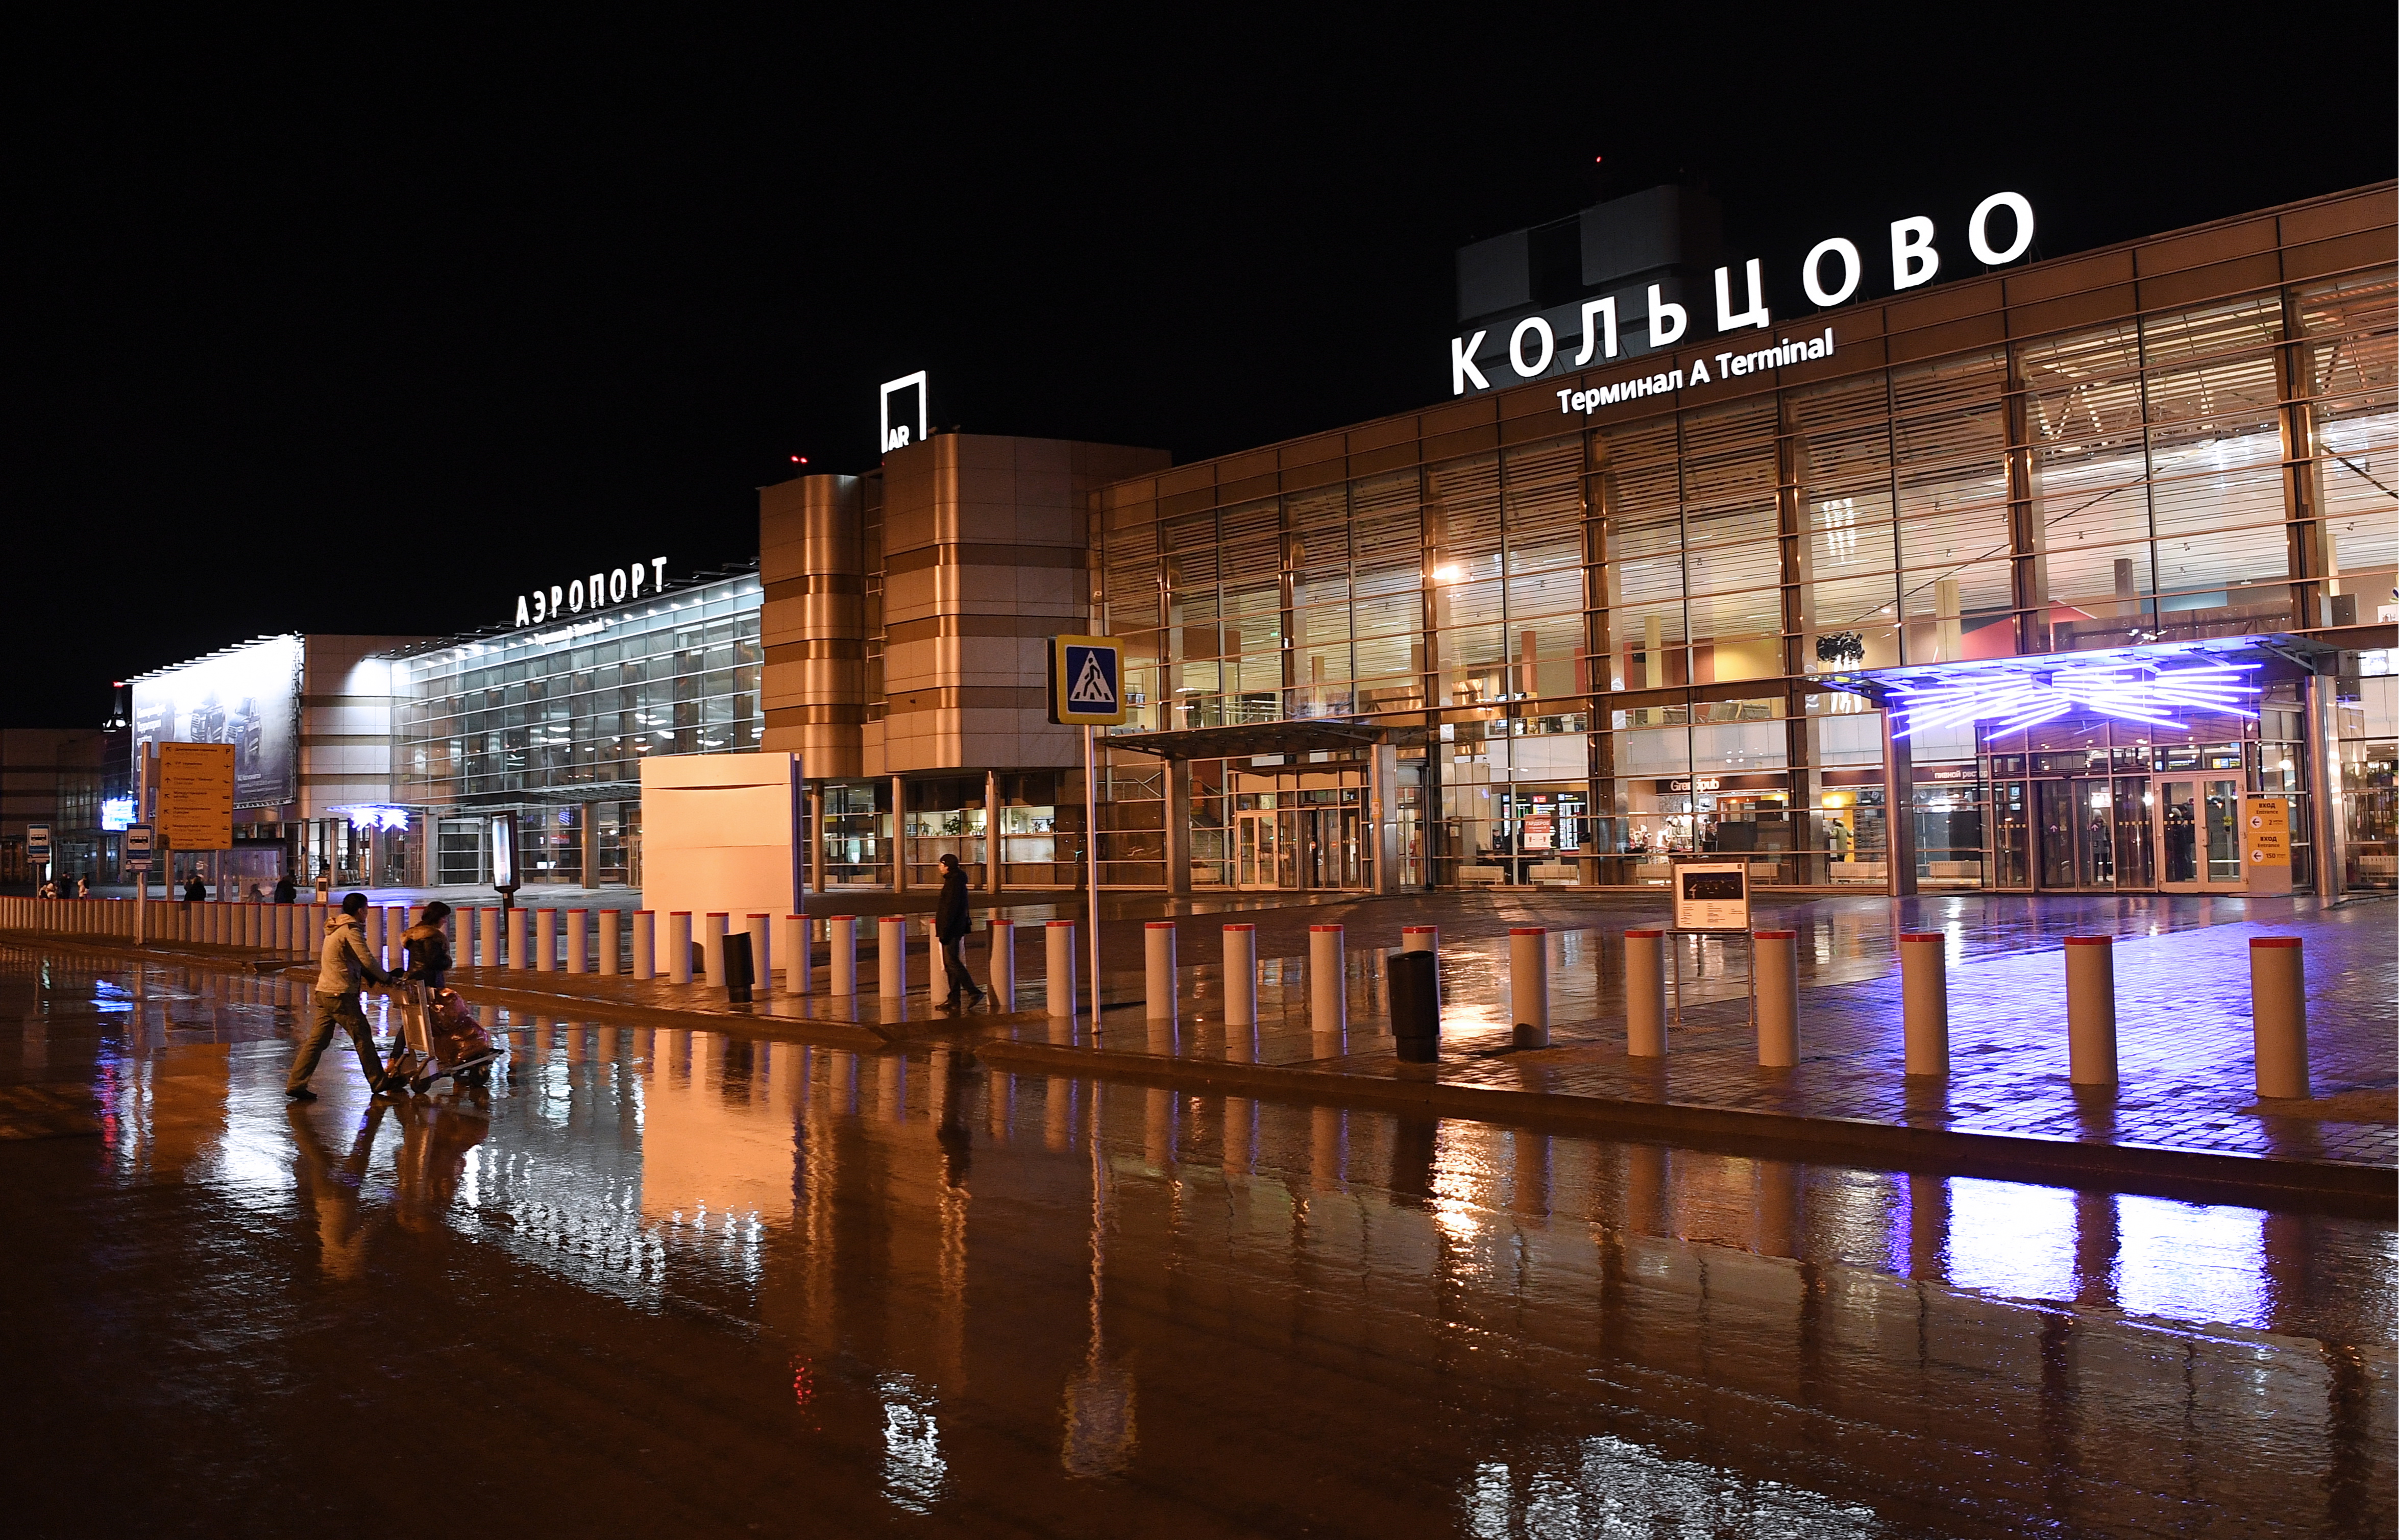 аэропорт кольцова в екатеринбурге